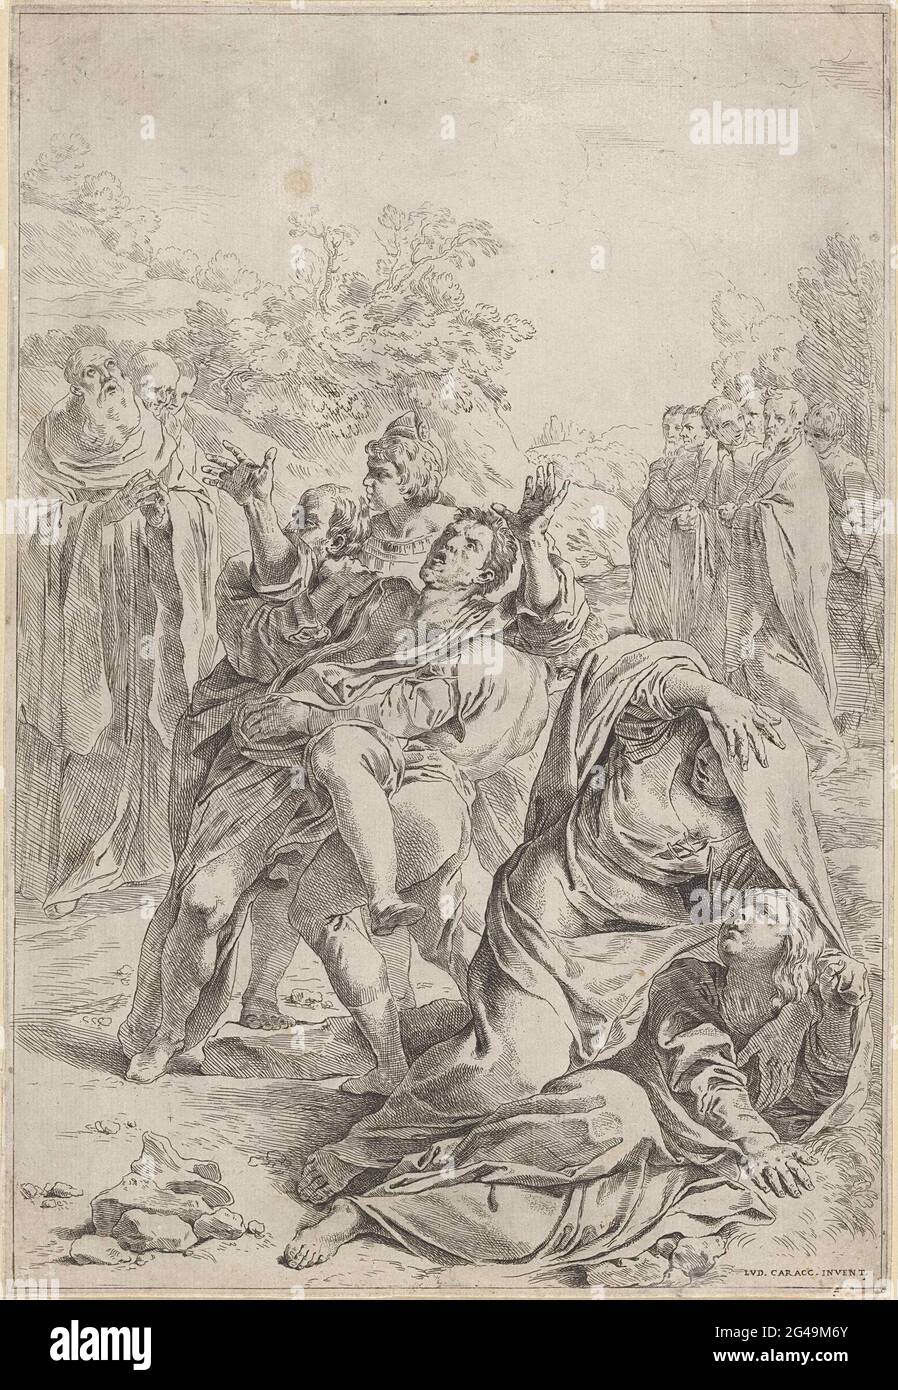 Der heilige Benedikt treibt einen Dämon an. Ein wildes Flopping, besessen von Dämonen, wird der Mensch von zwei Männern gehalten. Im Hintergrund links der heilige Benedikt, der von zwei Männern unterstützt wird. Zwei Frauen tauchen im Vordergrund ab. Stockfoto